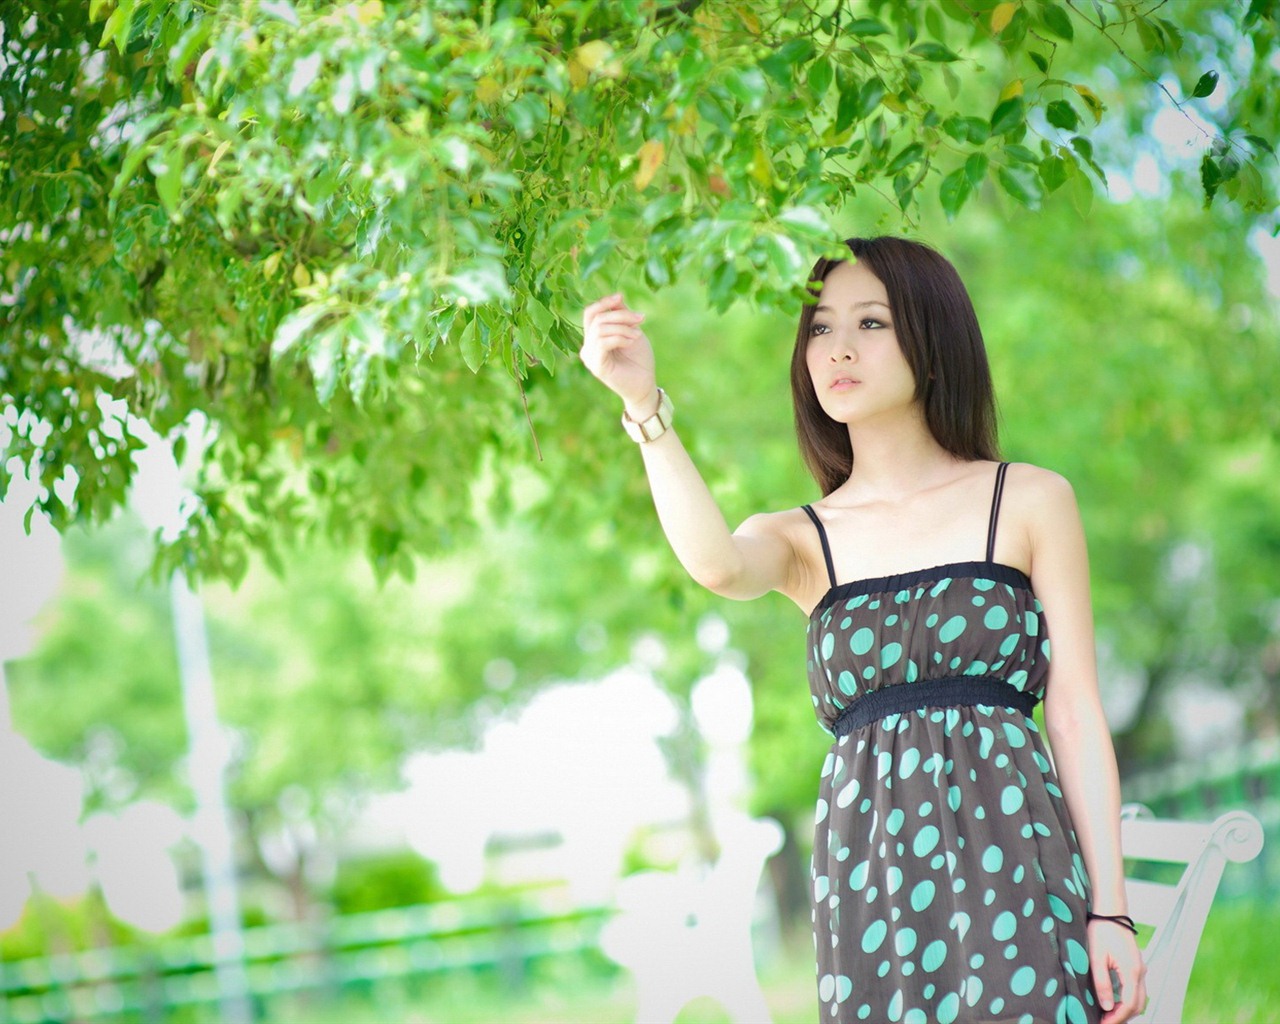 Taiwan fruit girl beautiful wallpapers (11) #10 - 1280x1024